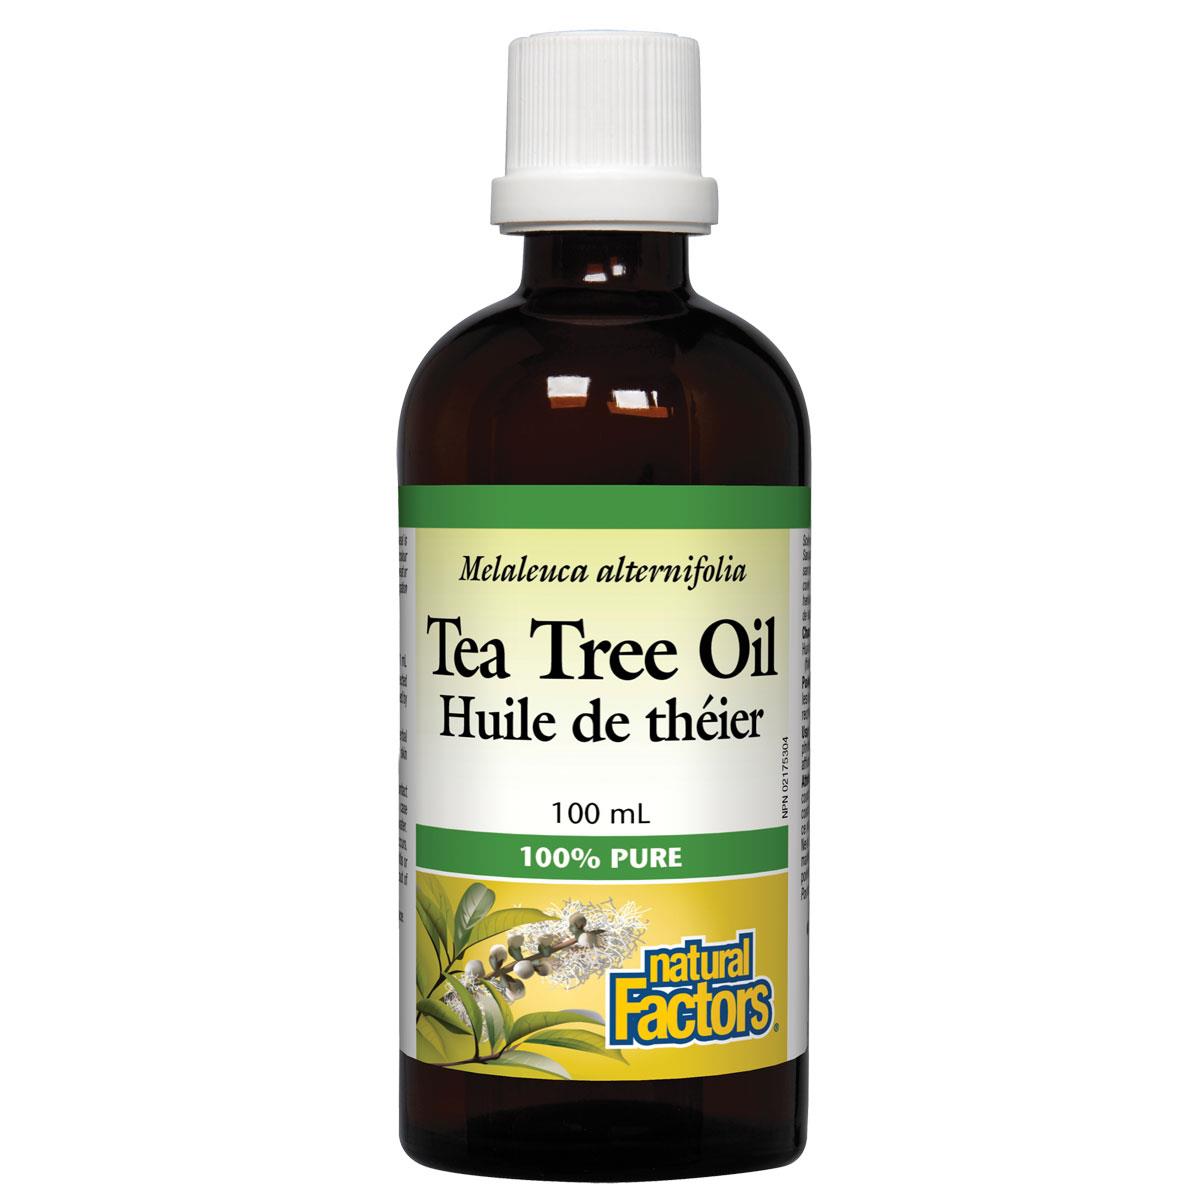 Natural Factors 100% Pure Tea Tree Oil, 100ml